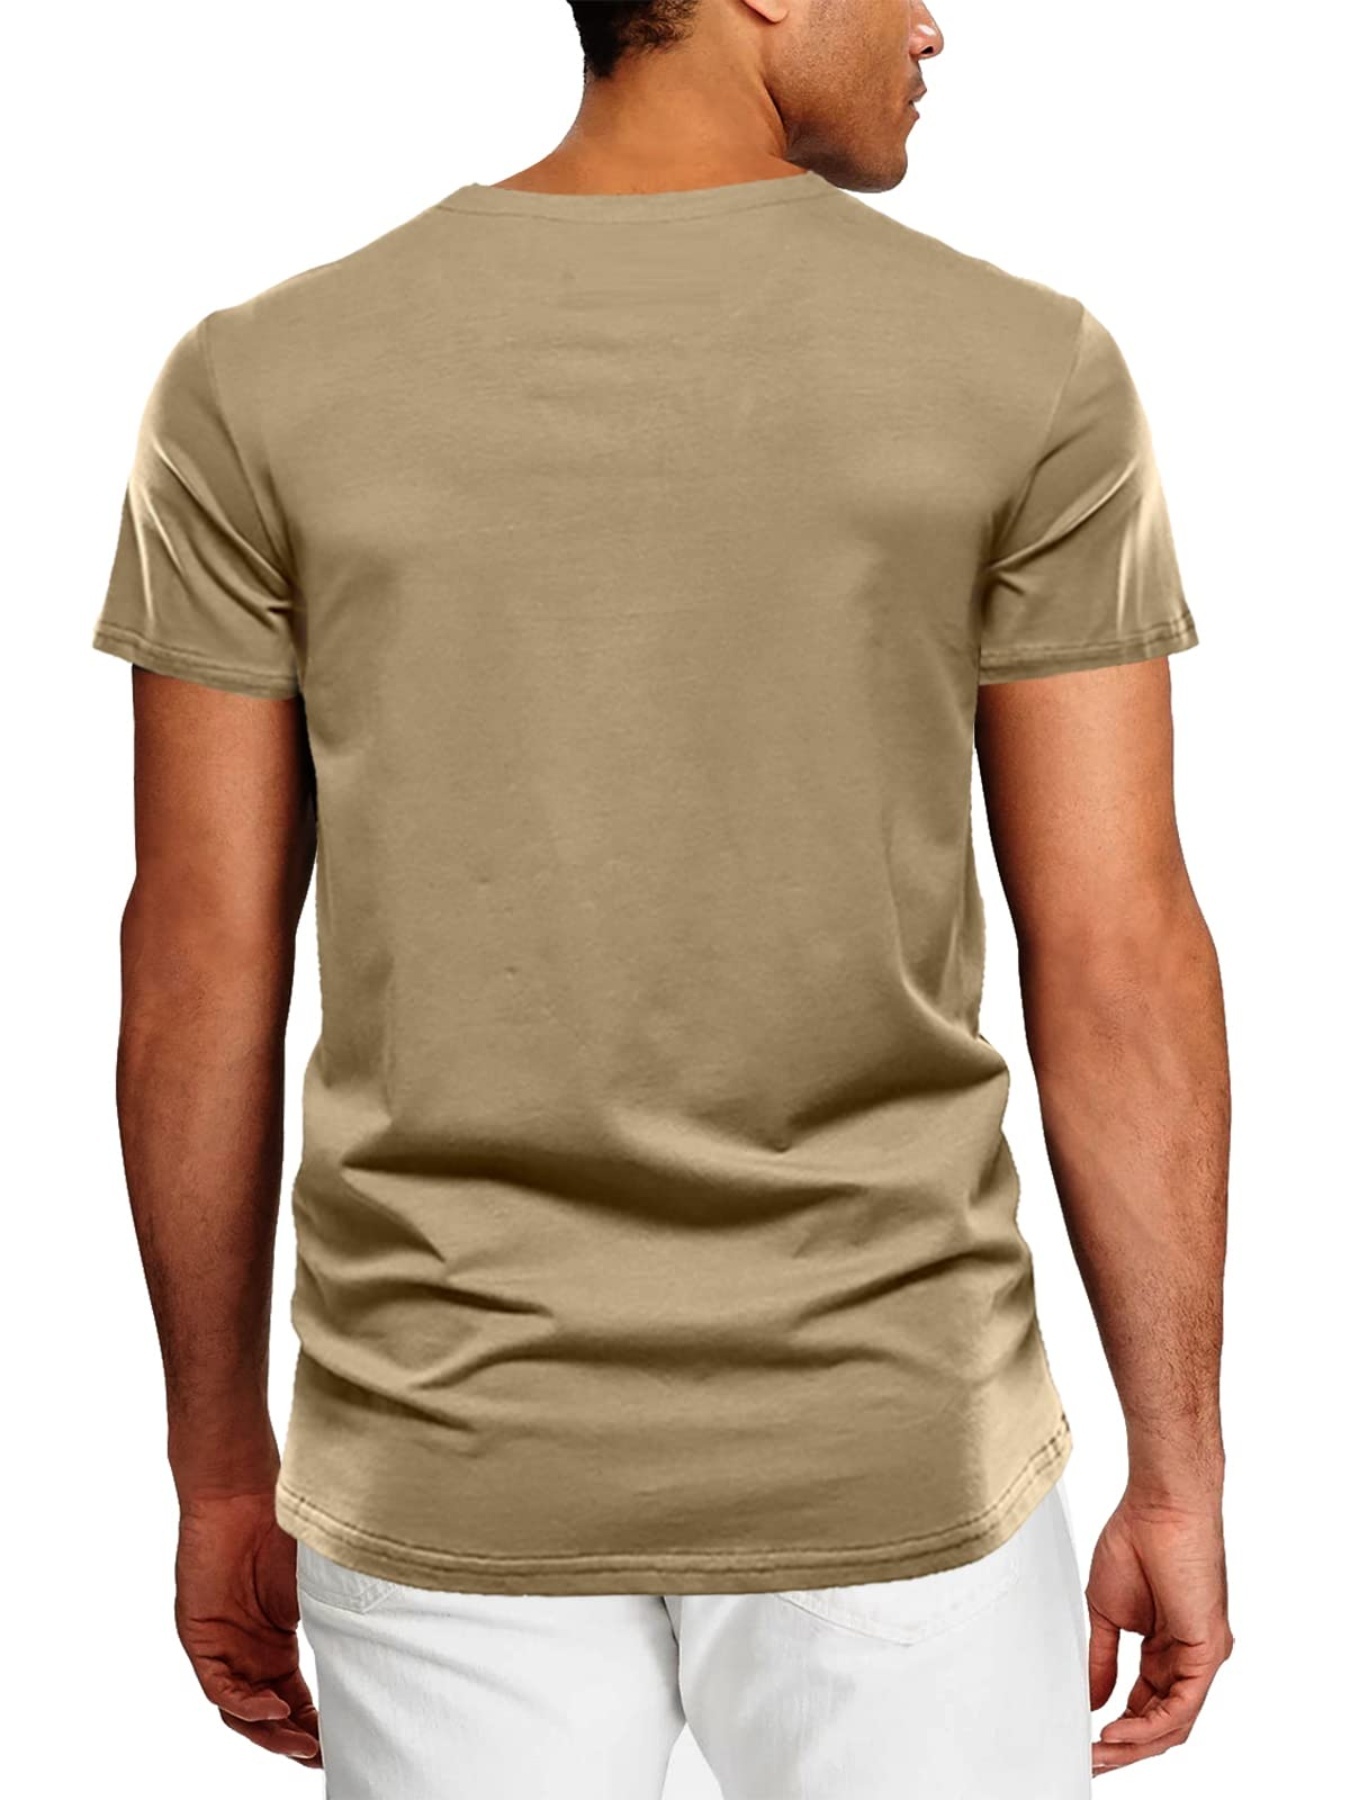 Men Plain Henley Shirt Short Sleeve Pocket T-shirt Summer Casual Tops